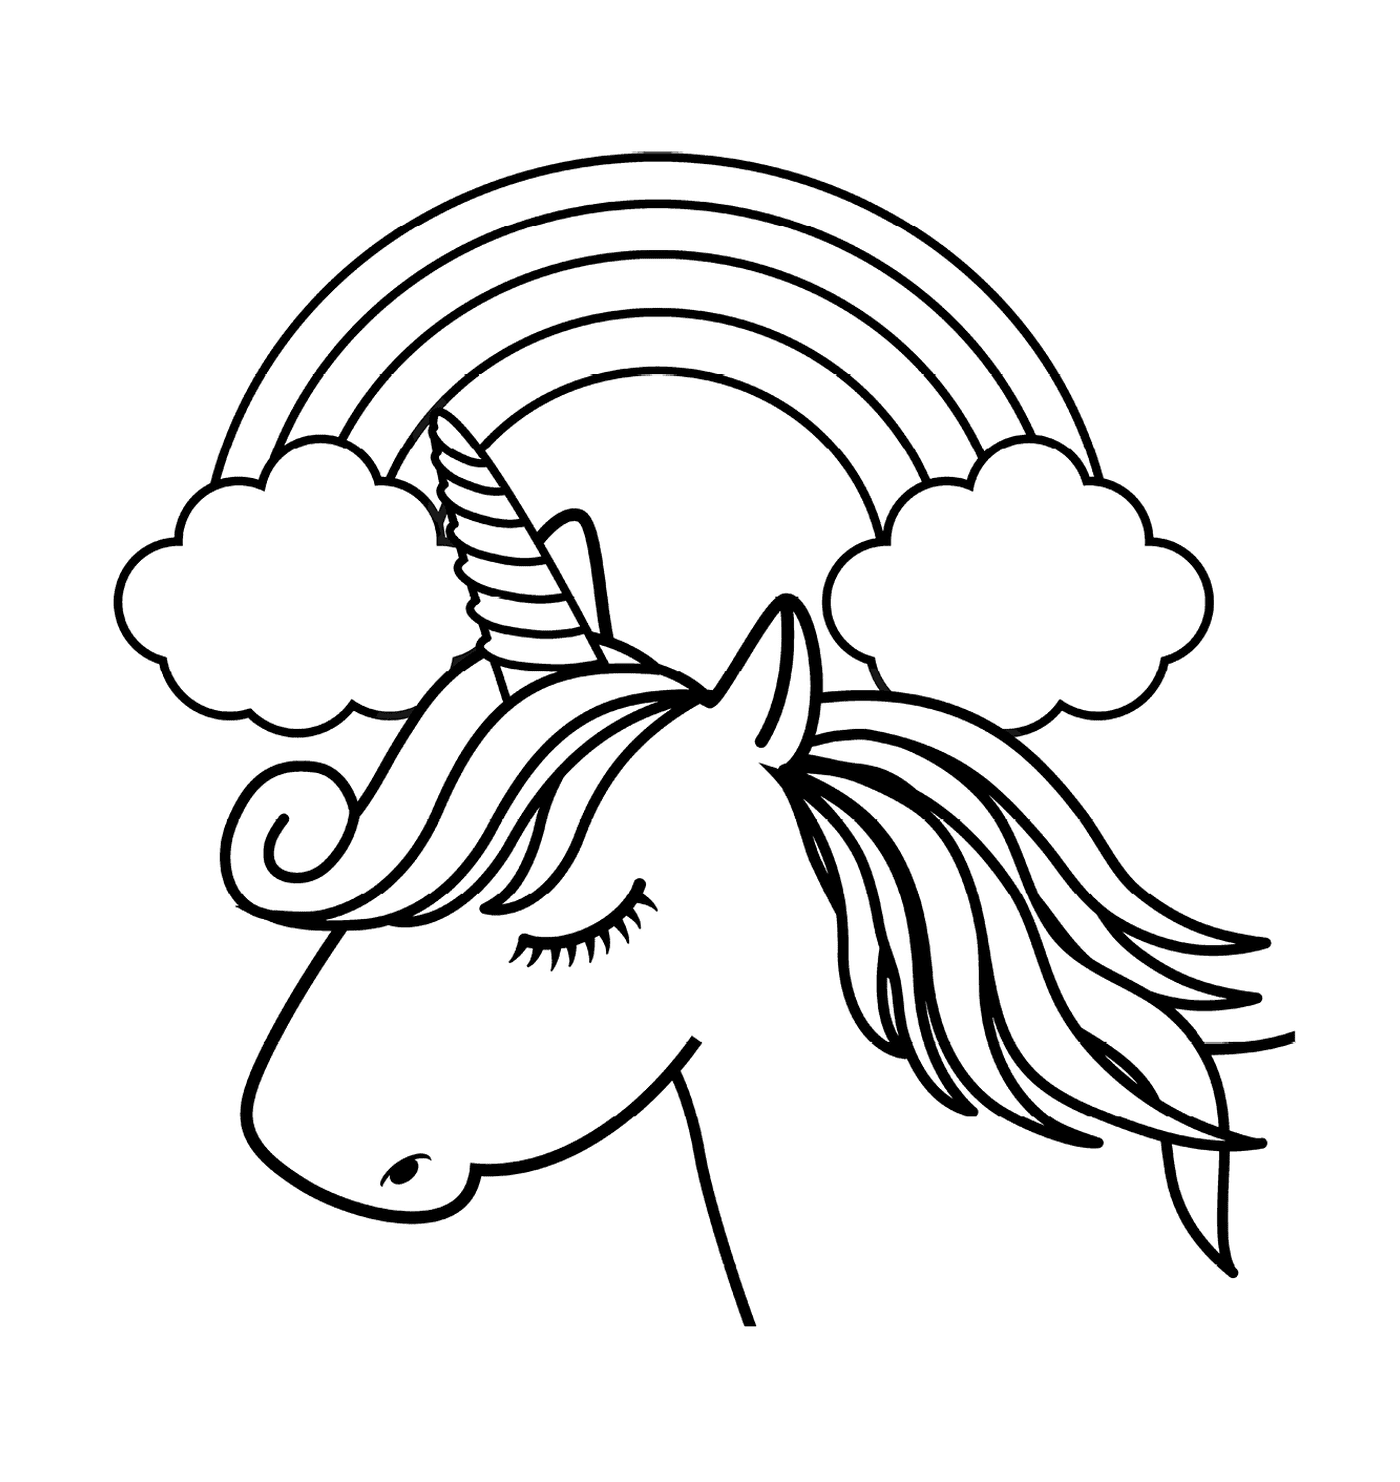 licorne blanche avec une corne unique devant un arc en ciel